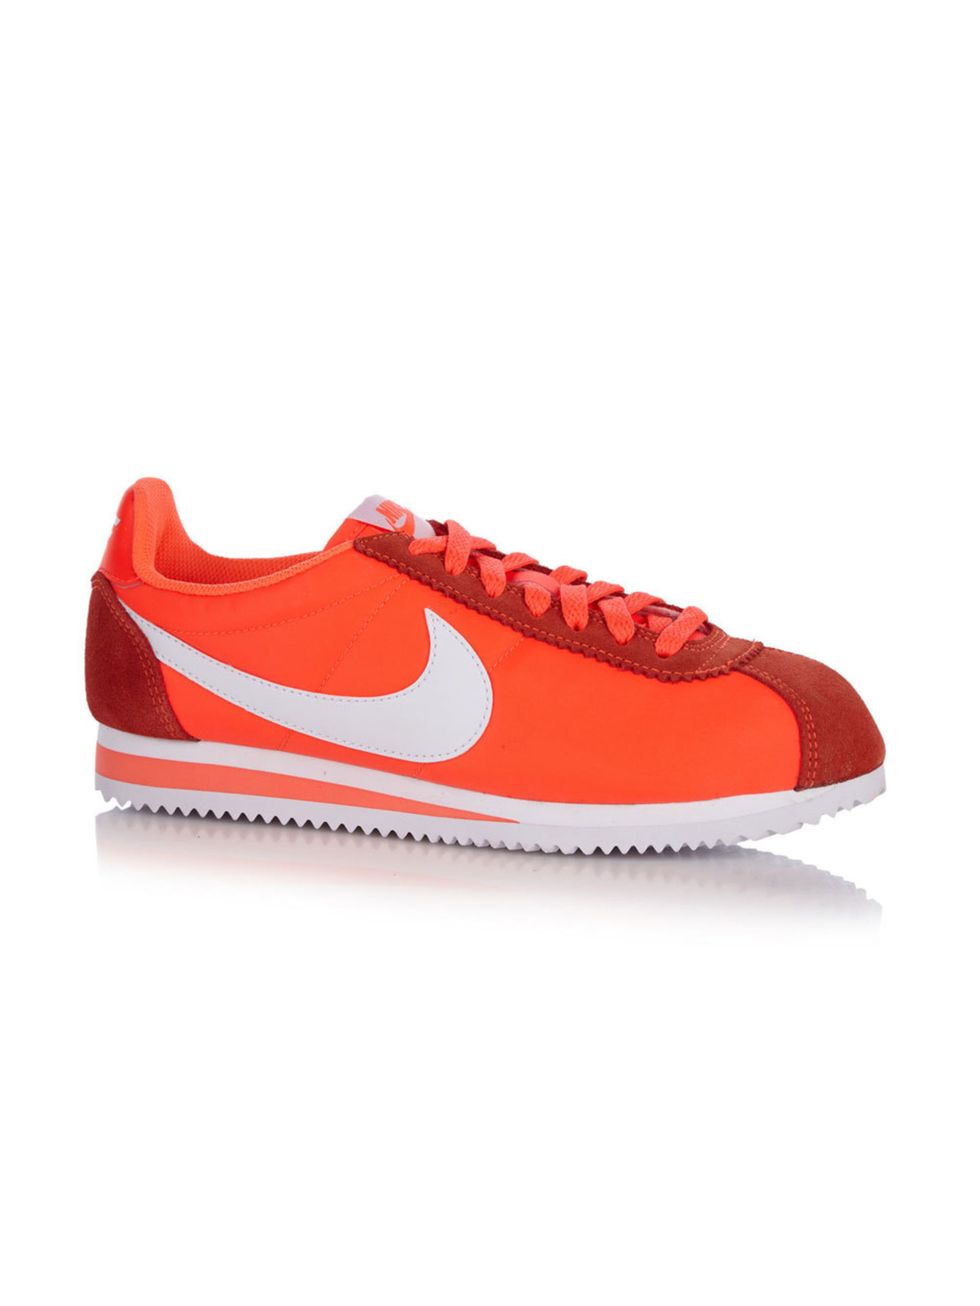 Footwear, Shoe, Product, Red, White, Sportswear, Line, Orange, Sneakers, Logo, 